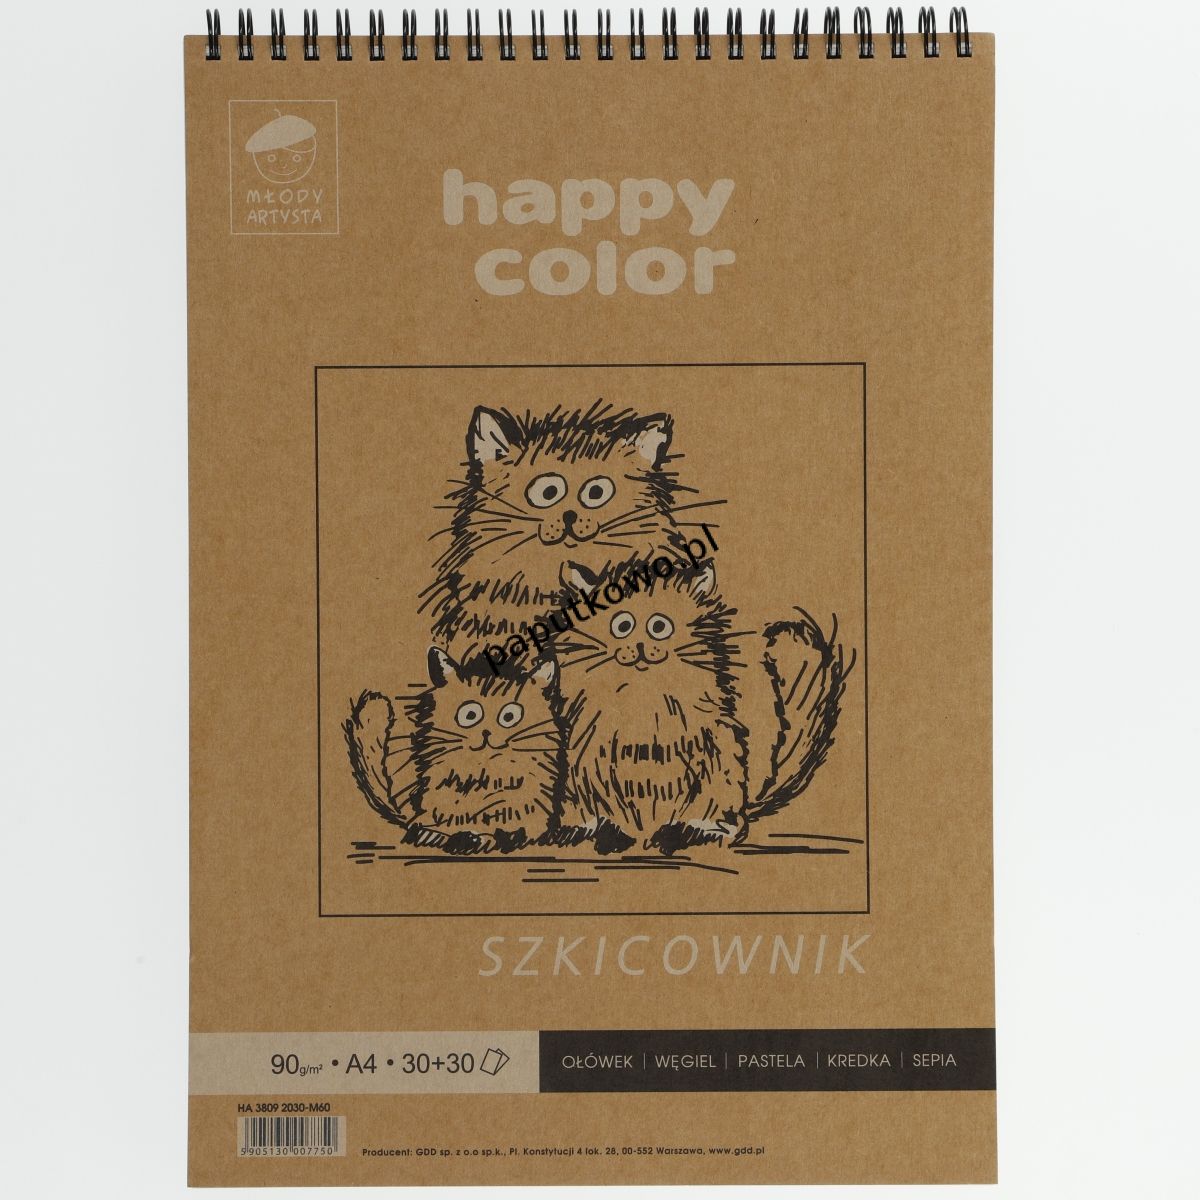 Blok artystyczny Gdd Happy Color szkicownik młody artysta A4 80g 60k (HA 3809 2030 M60) 1